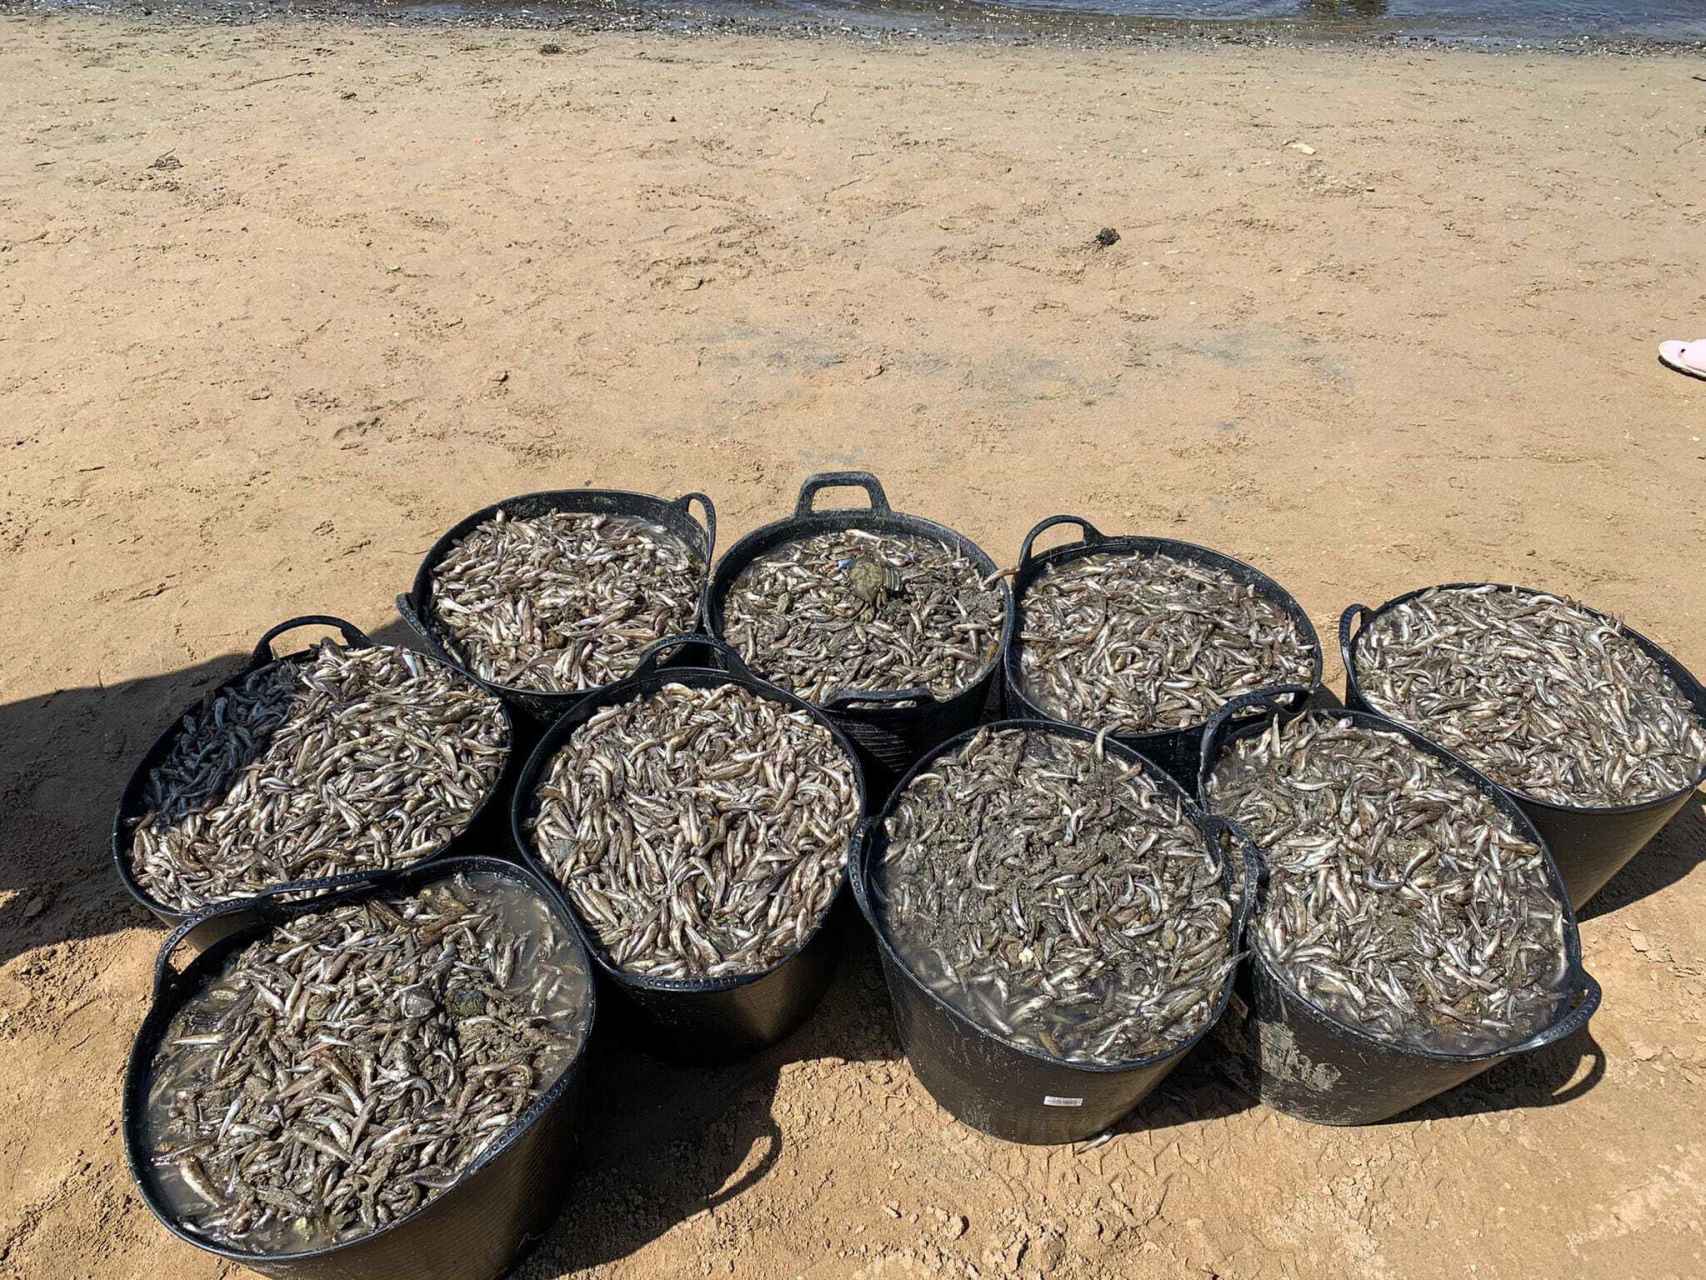 Capazos con peces muertos recogidos en una playa del Mar Menor.